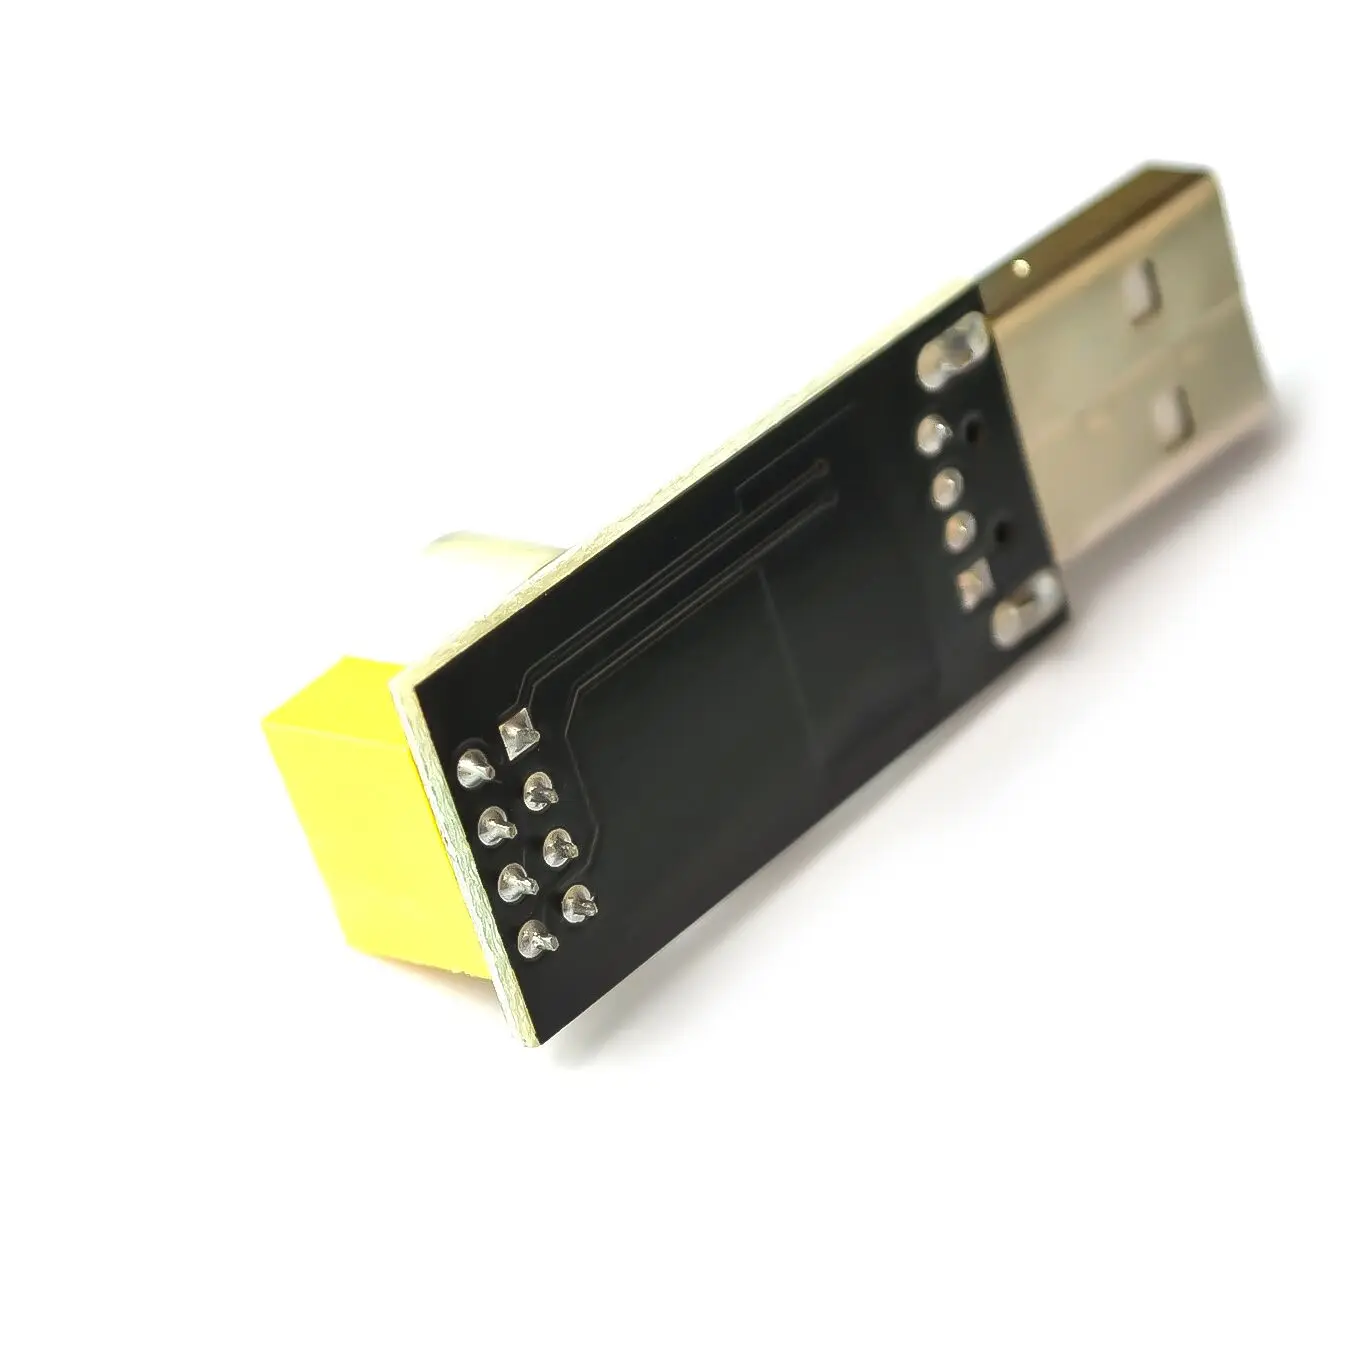 ESP01 программатор адаптер UART GPIO0 ESP-01 адаптер ESP8266 CH340G USB к ESP8266 Серийный беспроводной Wifi разработчик плата модуль